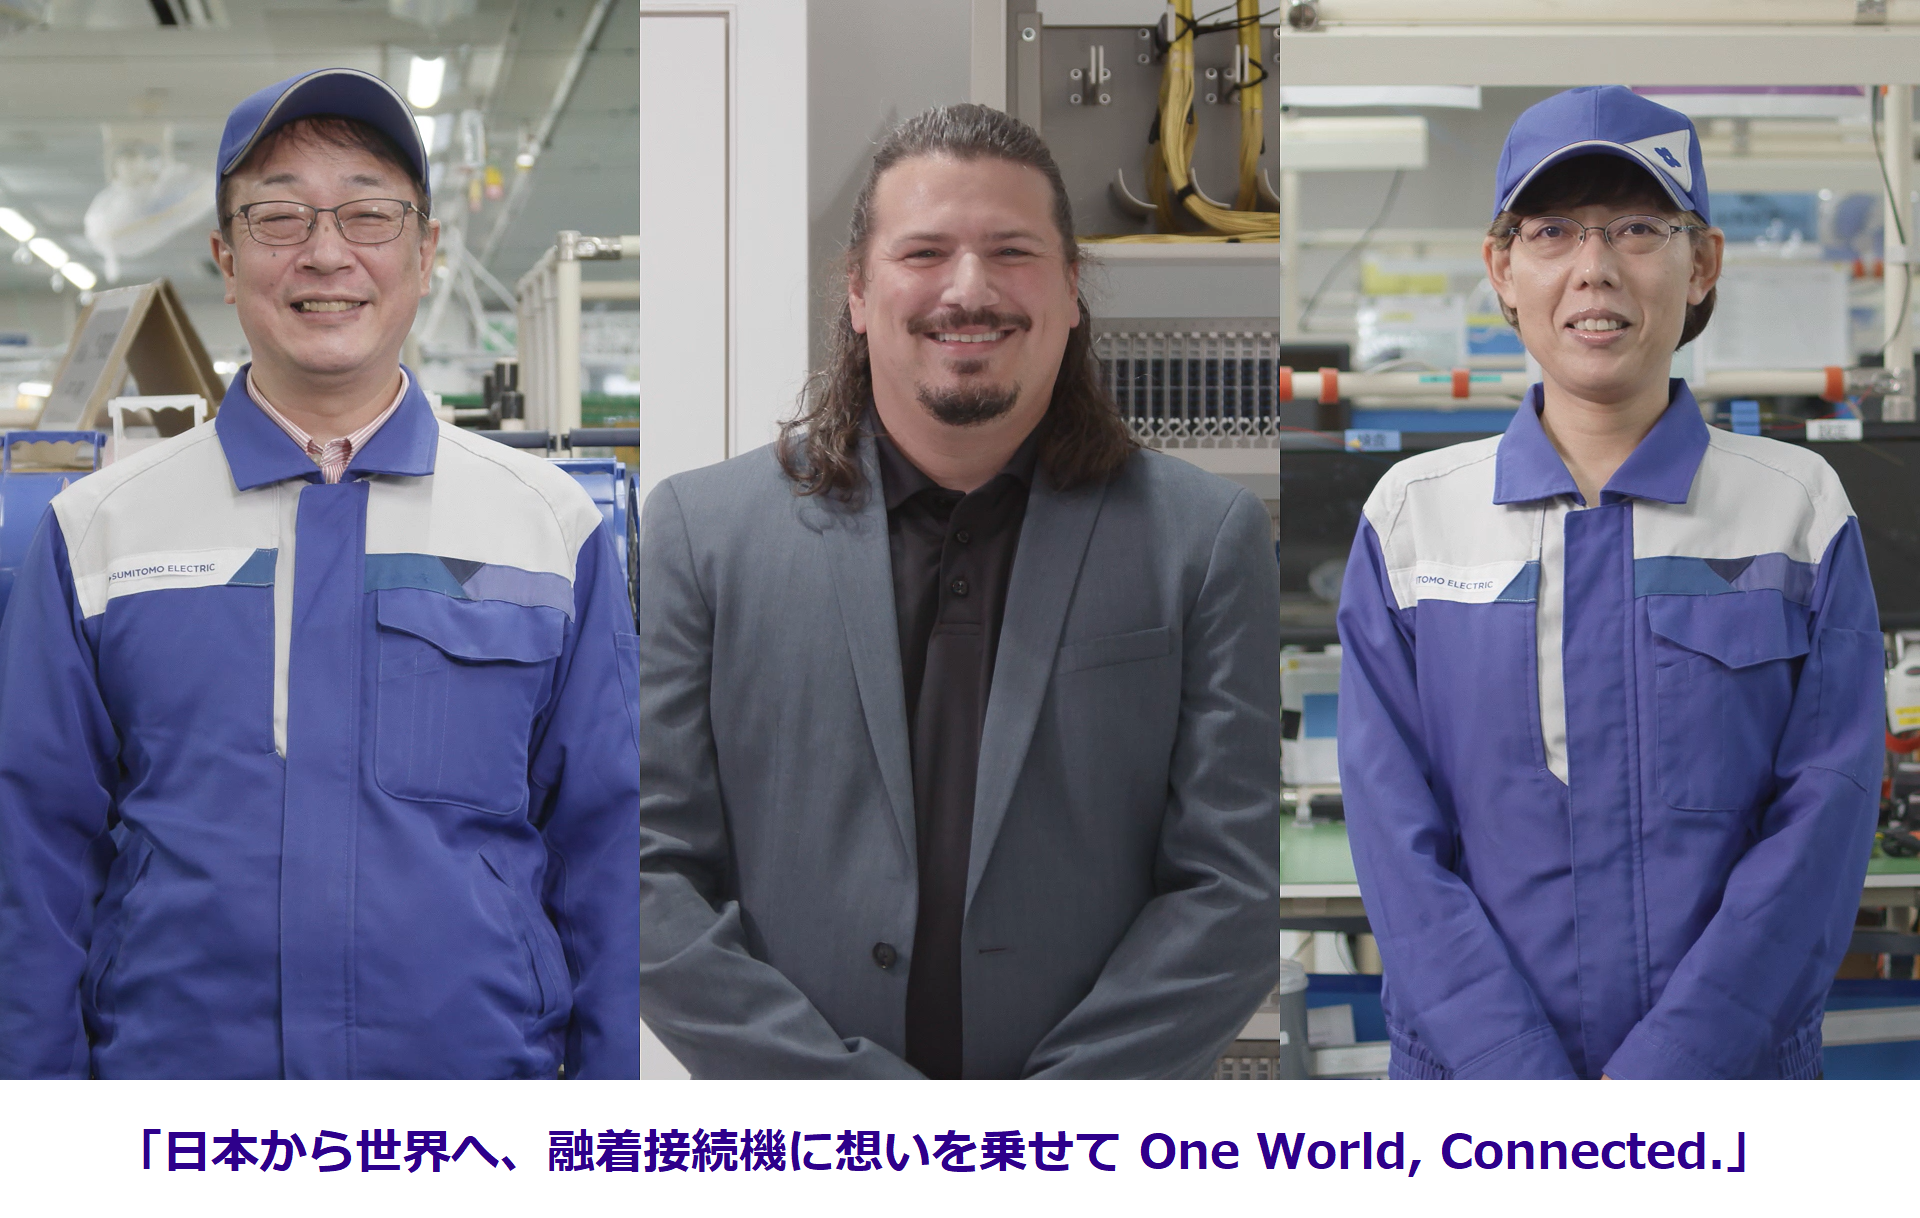 「日本から世界へ、融着接続機に想いを乗せて One World, Connected.」